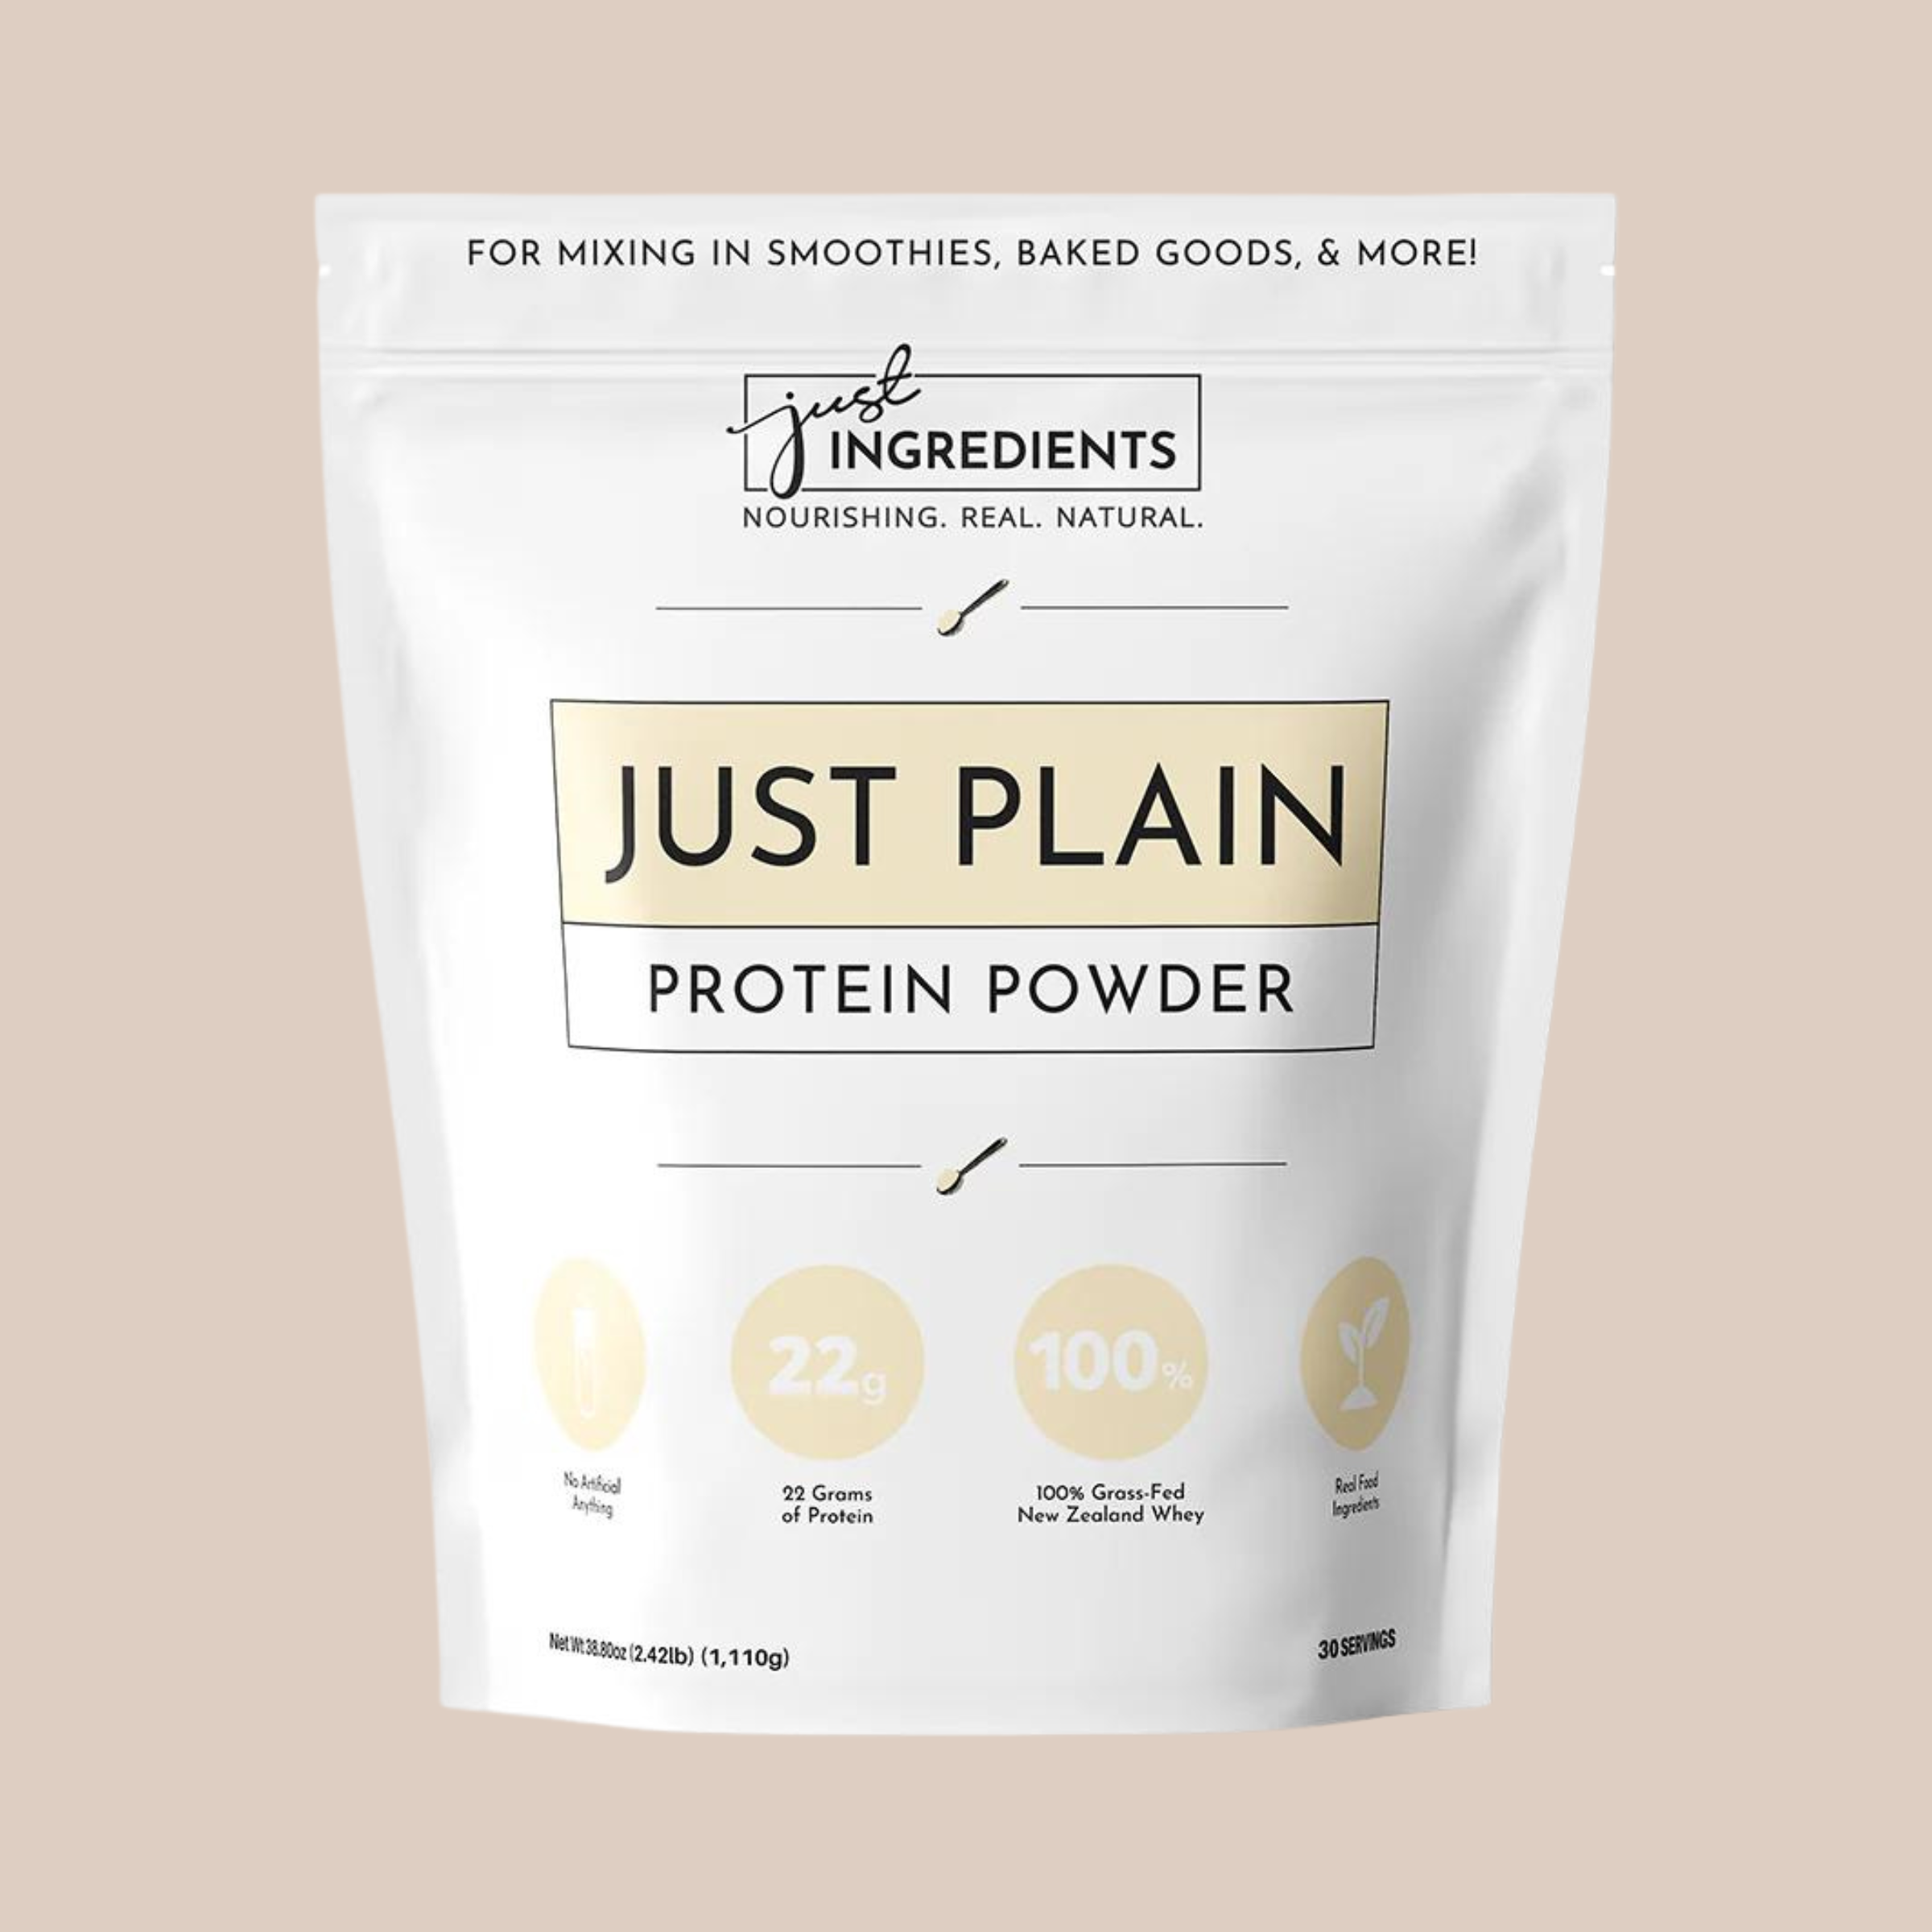 Just Plain Protein Powder